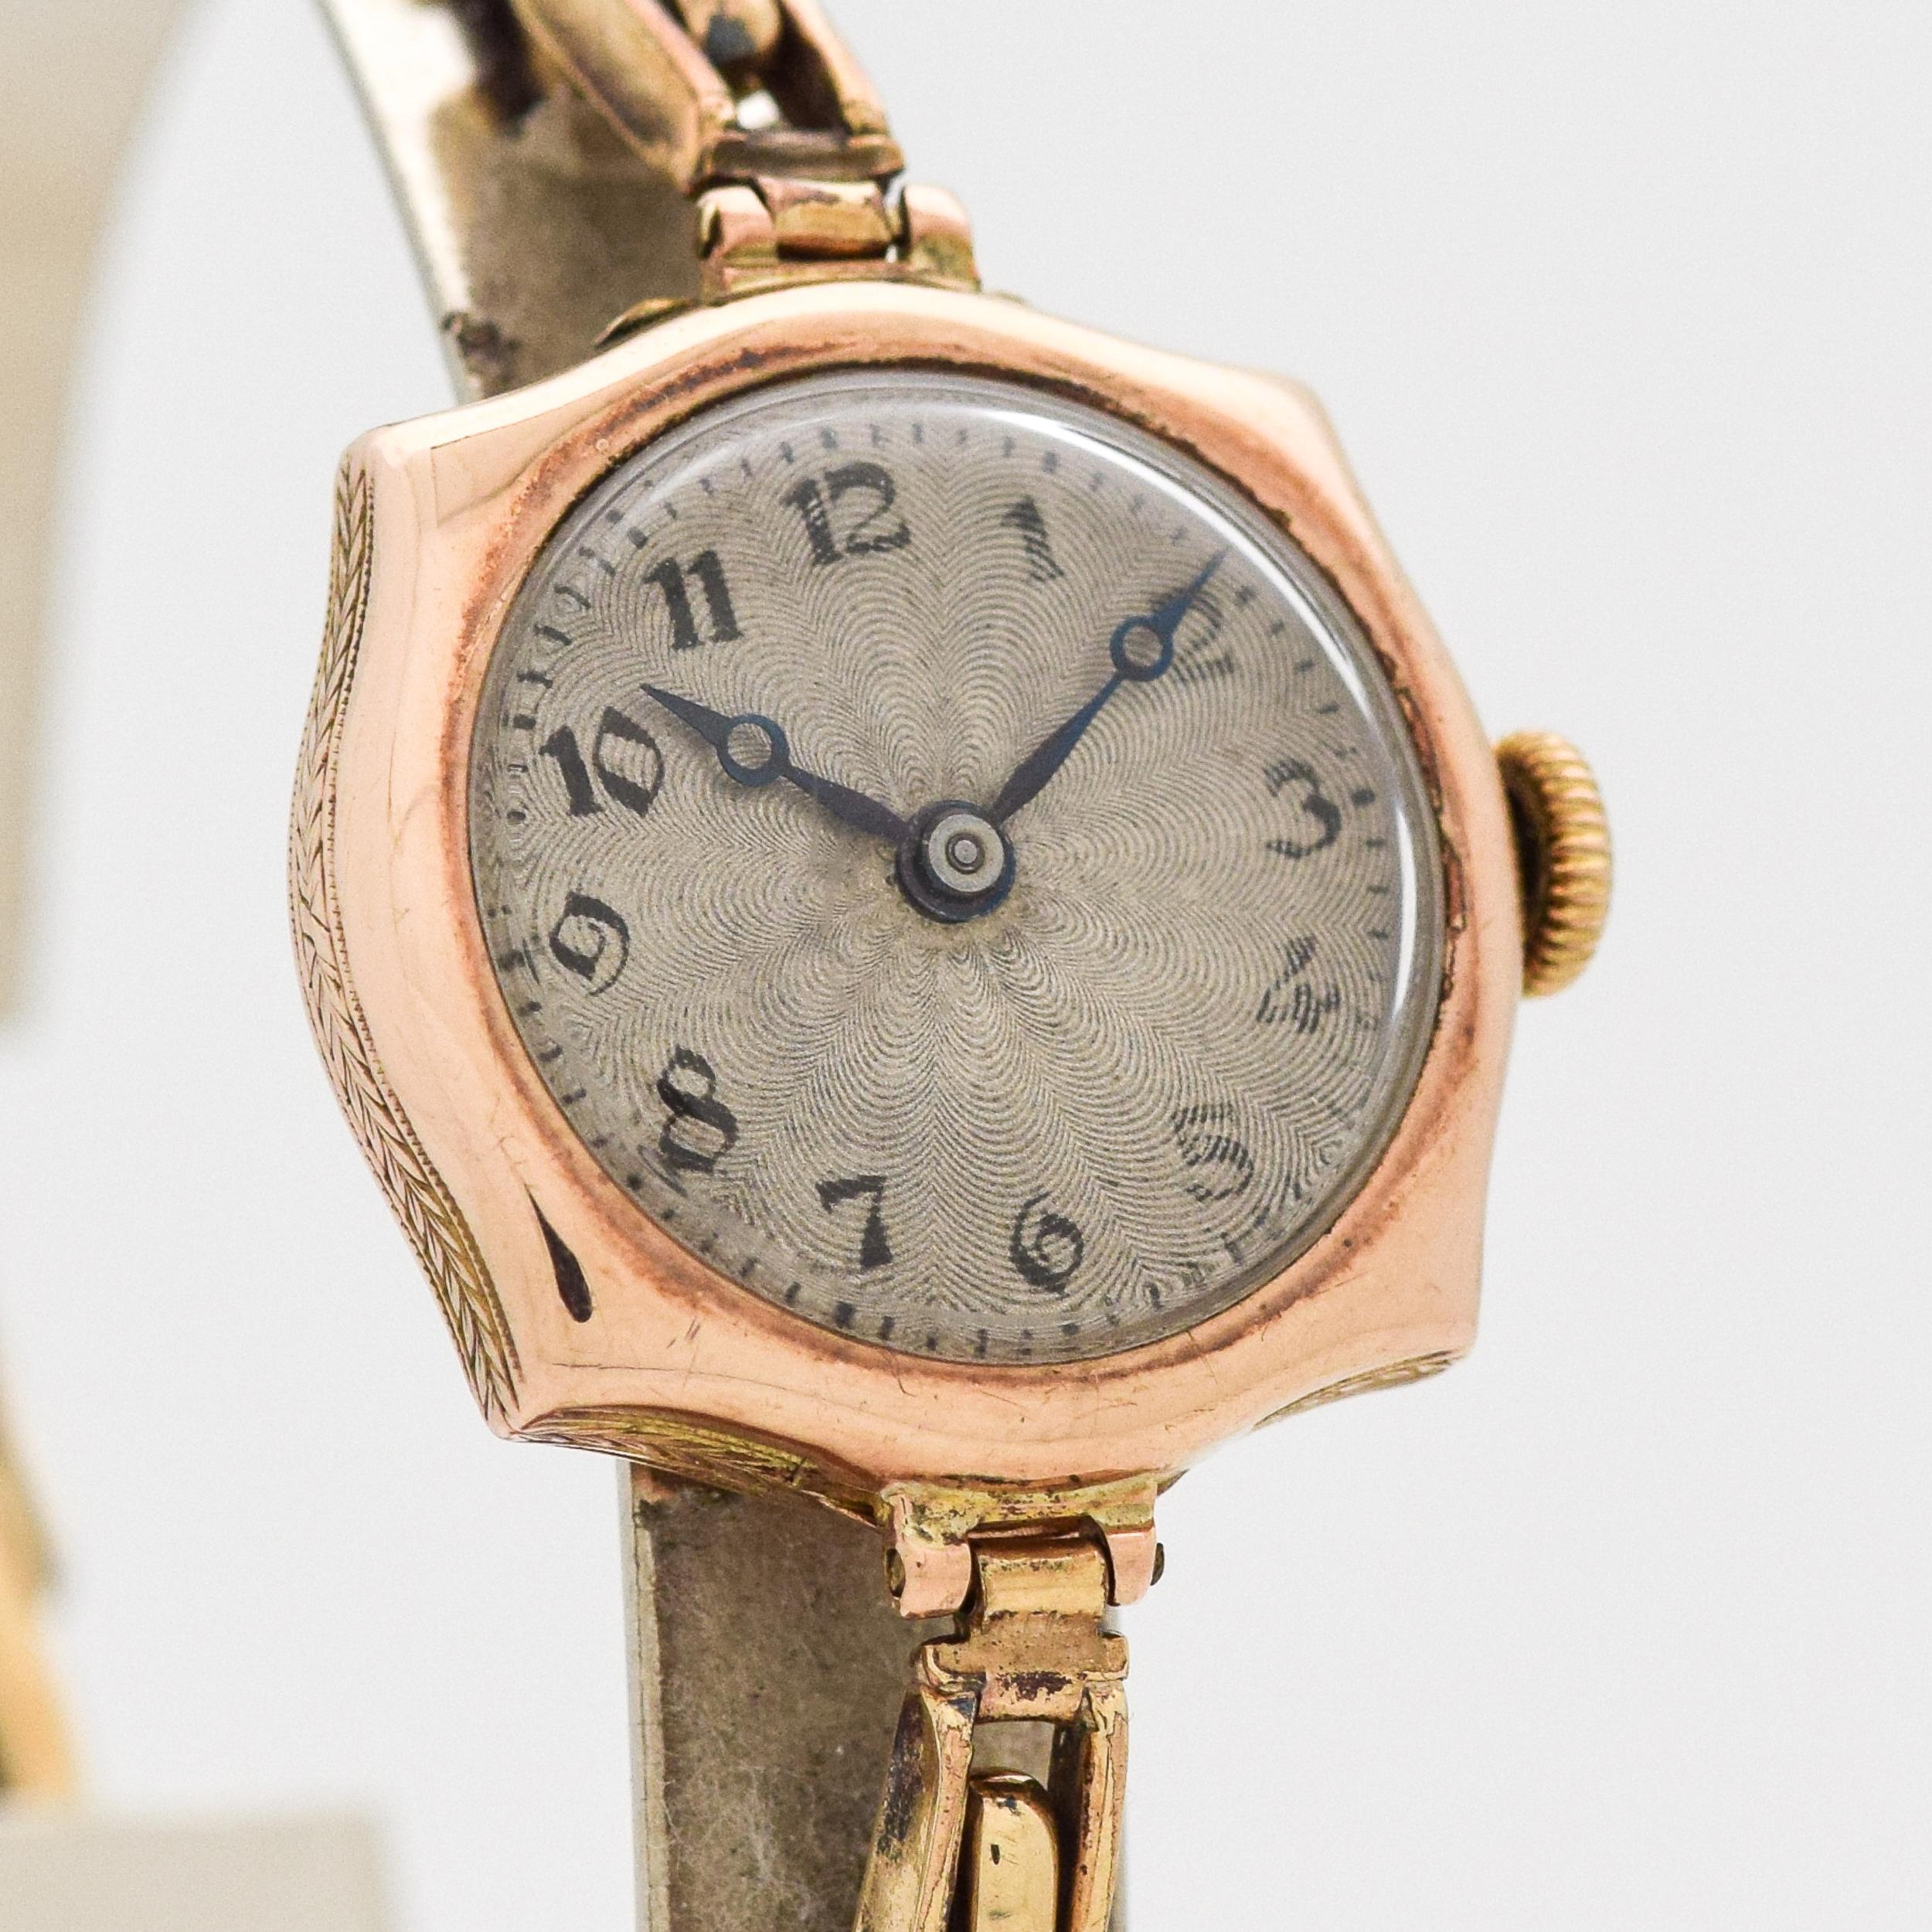 Montre Art Déco vintage Rolex pour femme en or rose clair 9k des années 1910, avec cadran argenté d'origine, chiffres arabes Breguet noirs et bracelet stretch à ressort d'origine.  23 mm x 27 mm d'une patte à l'autre (0,91 in. x 1,06 in.) -